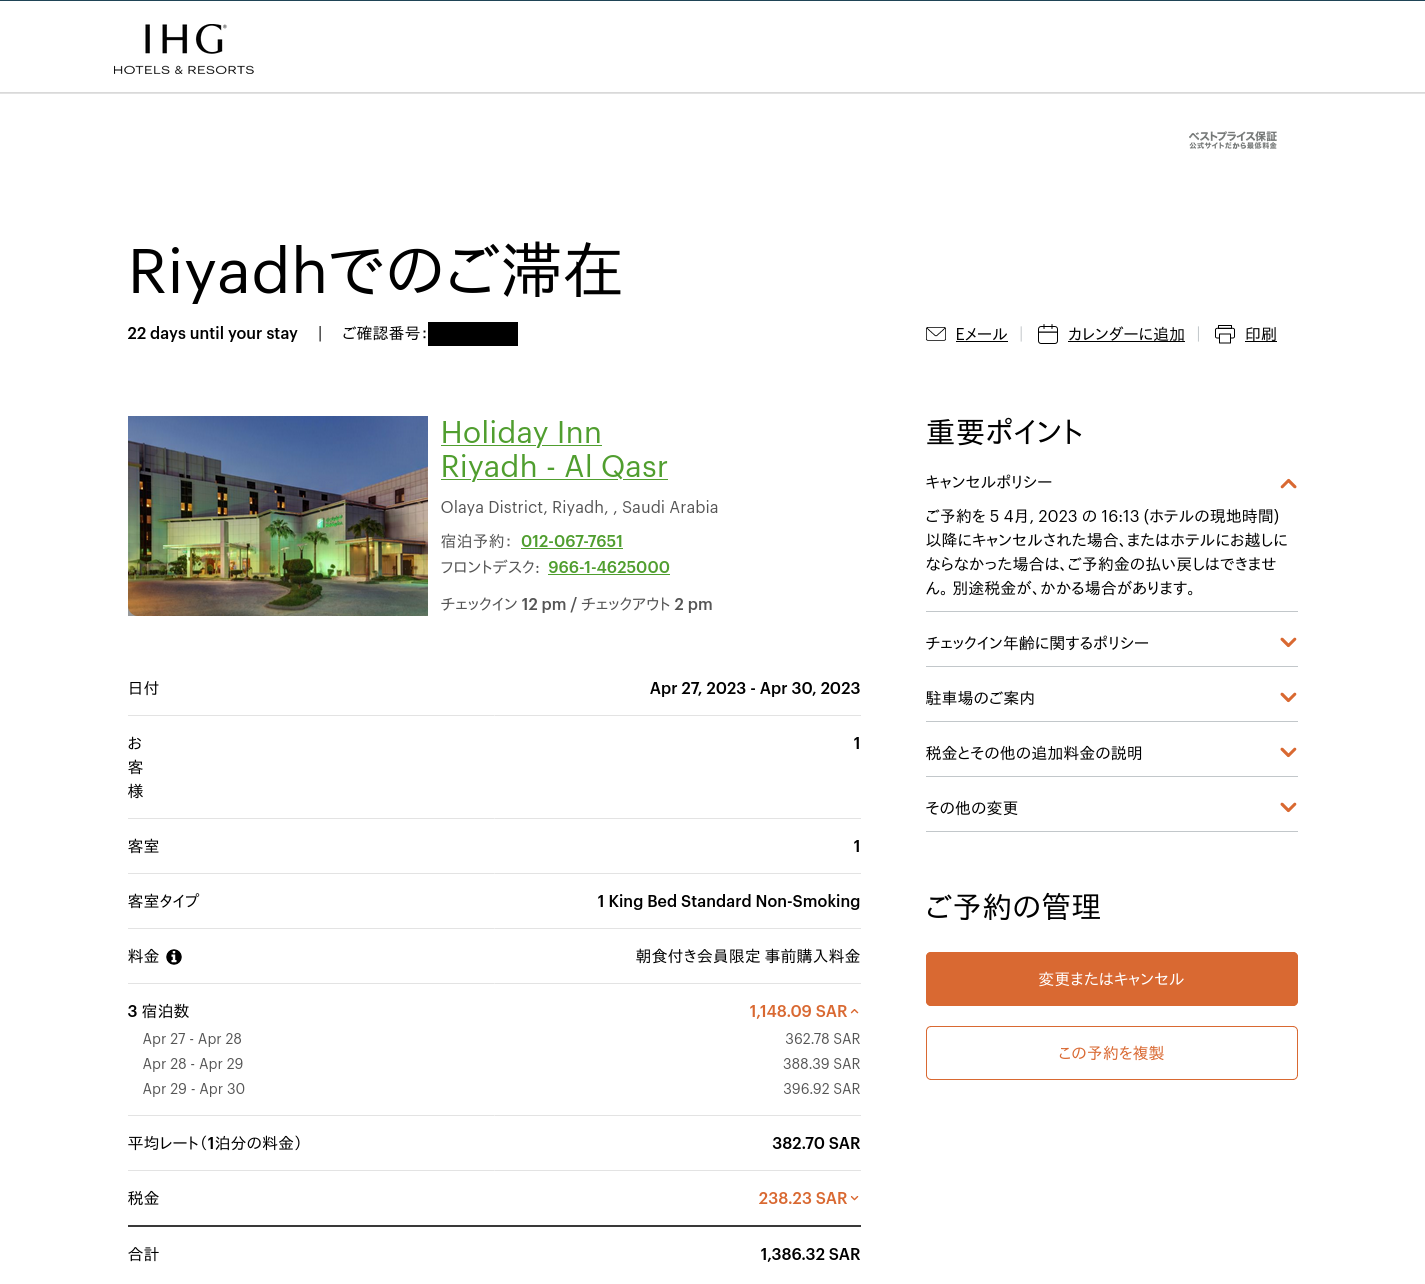 Holiday Inn Riyadh Al Qasrの予約管理画面